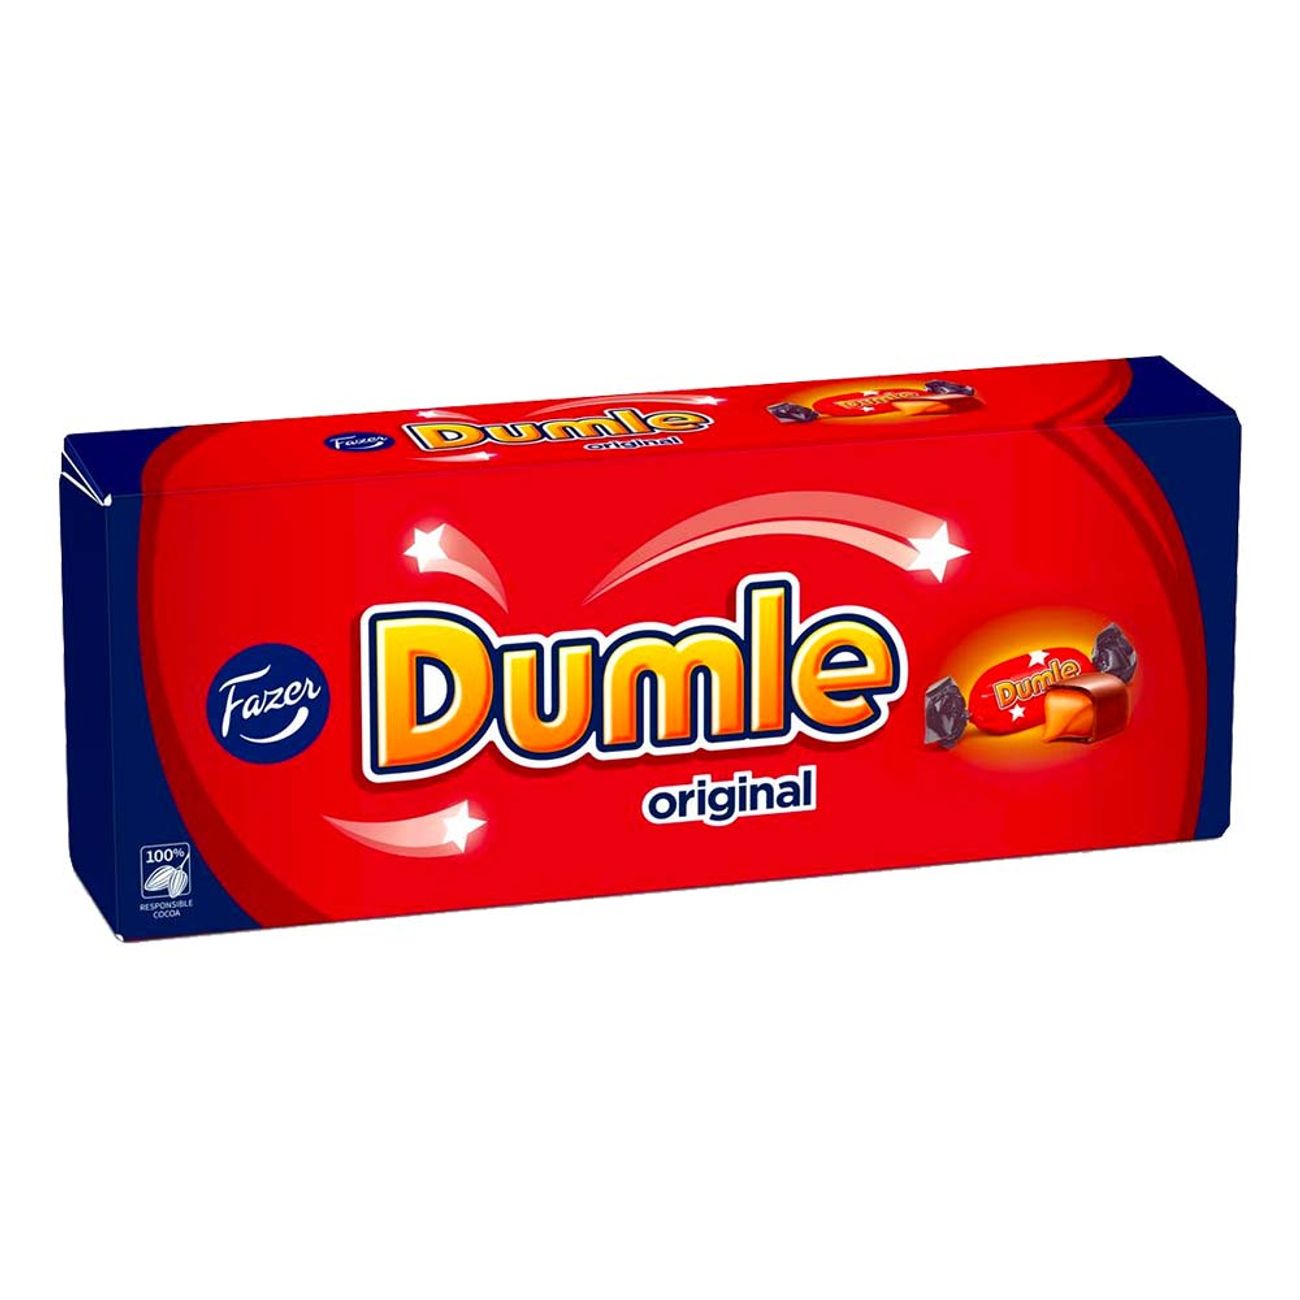 dumle-original-ask-94016-1